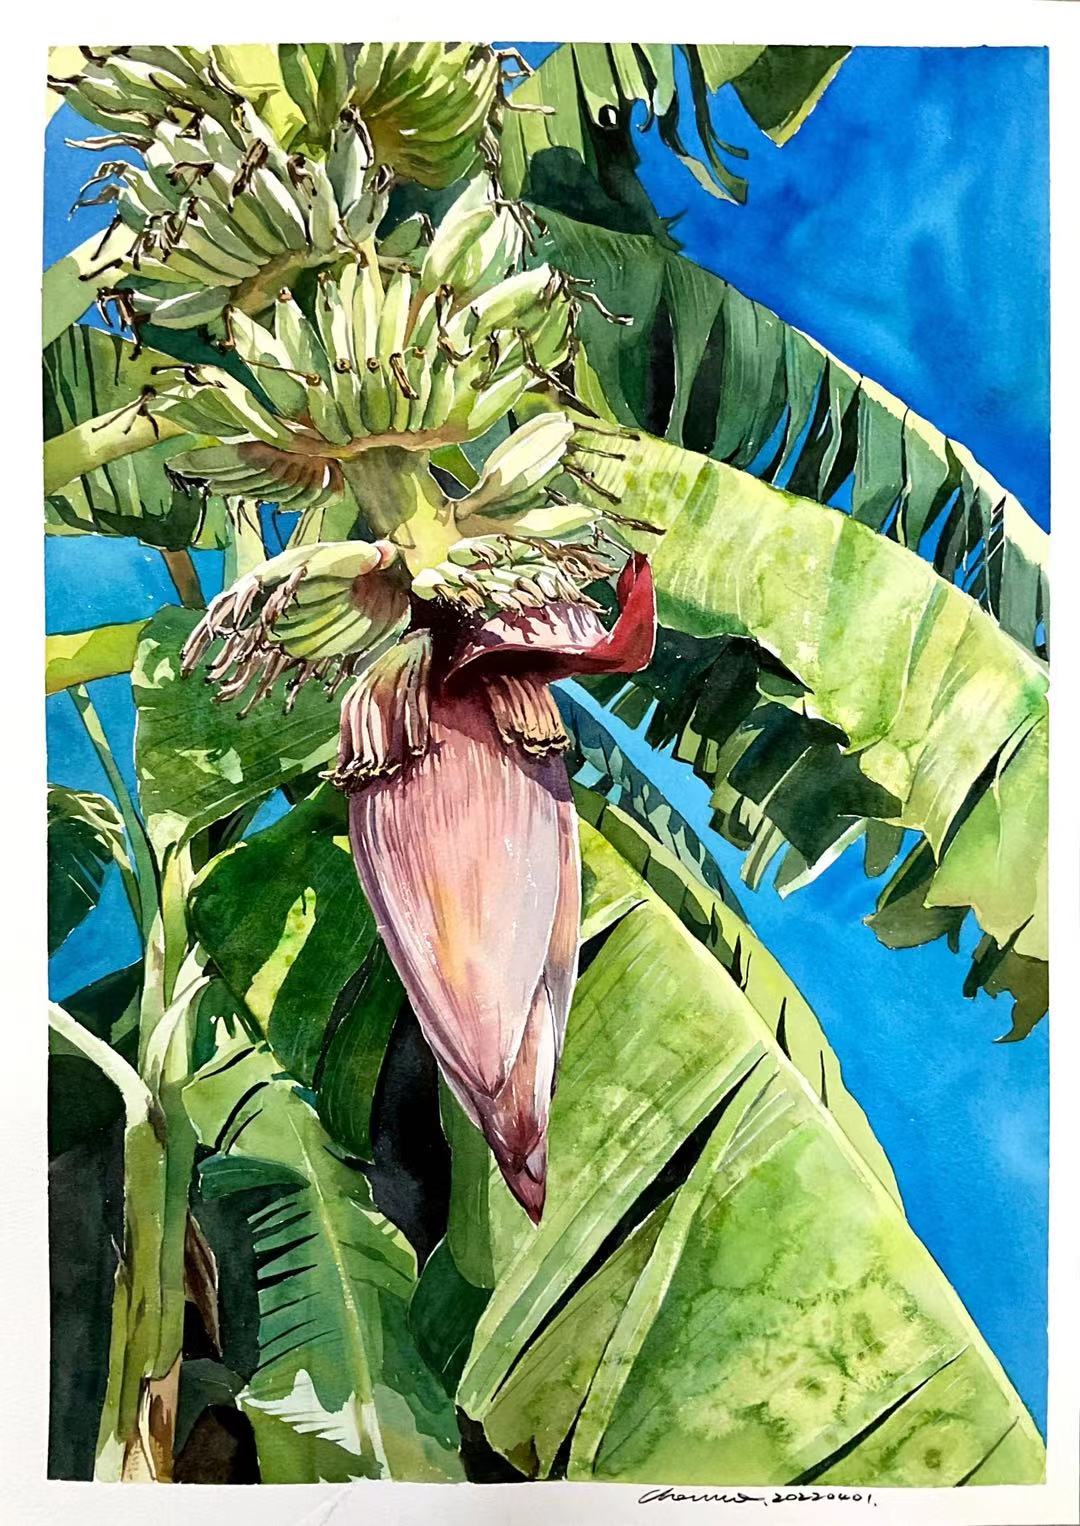 香蕉树的画法图片